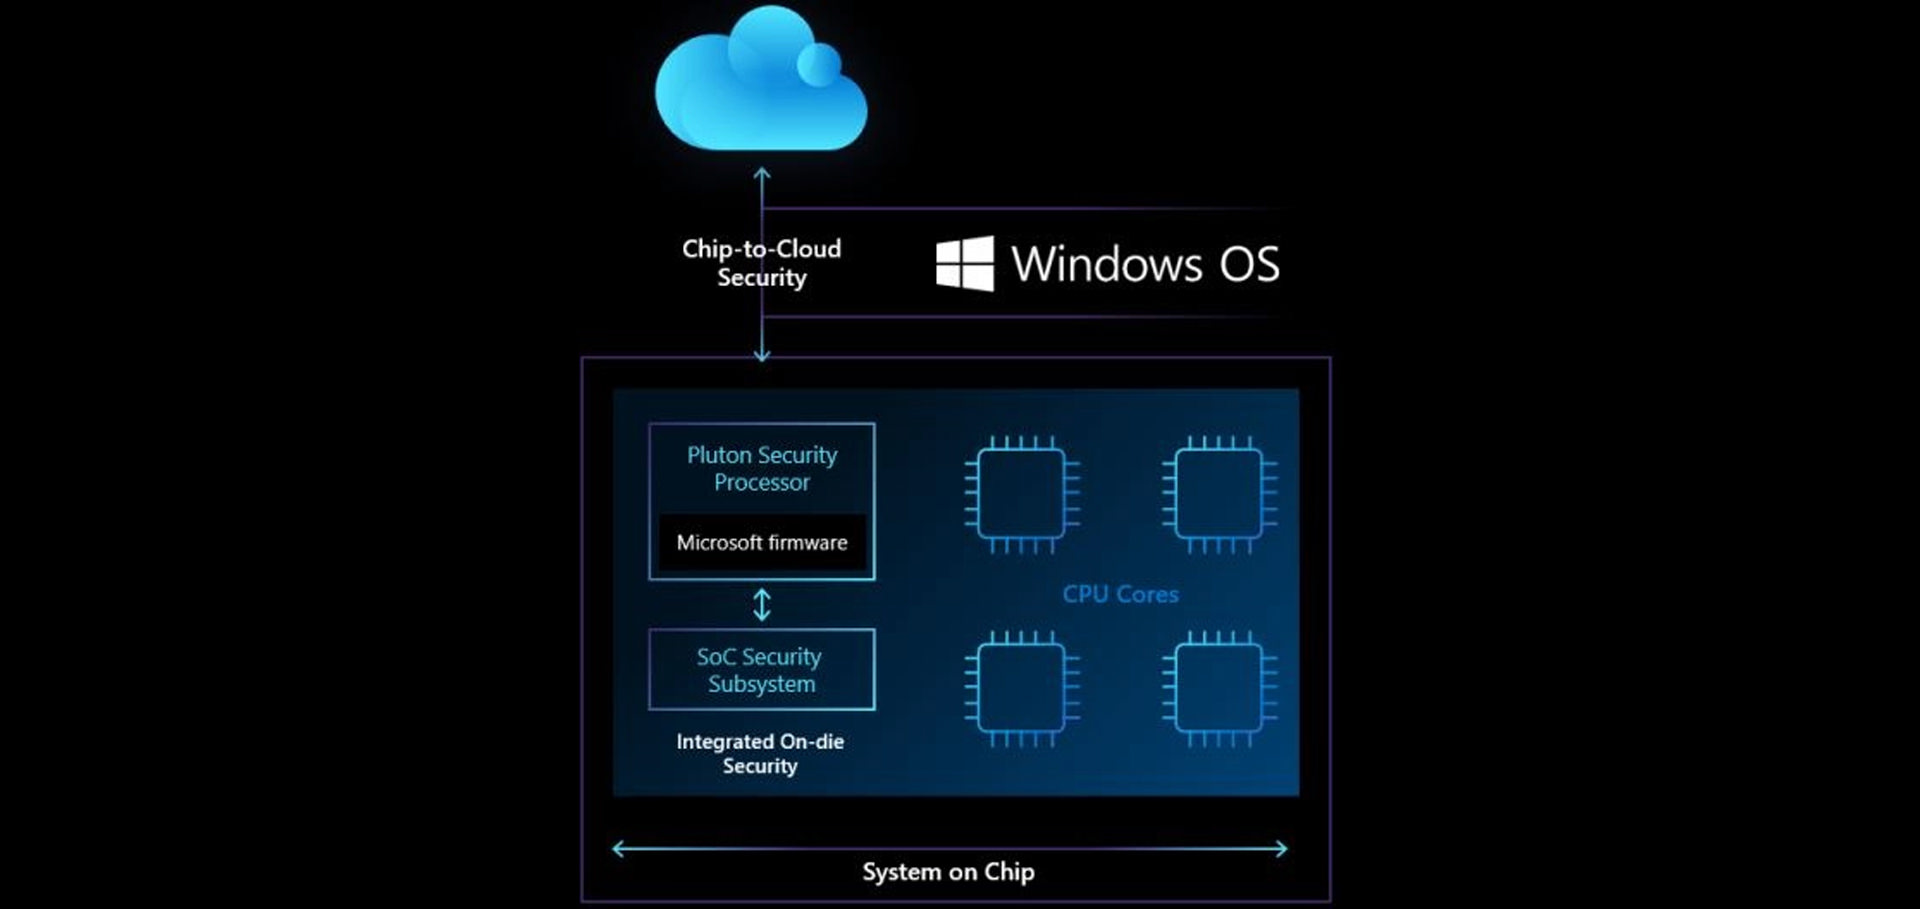 روش امن سازی سیستم توسط پردازنده مایکروسافت پلوتون / Microsoft Pluton